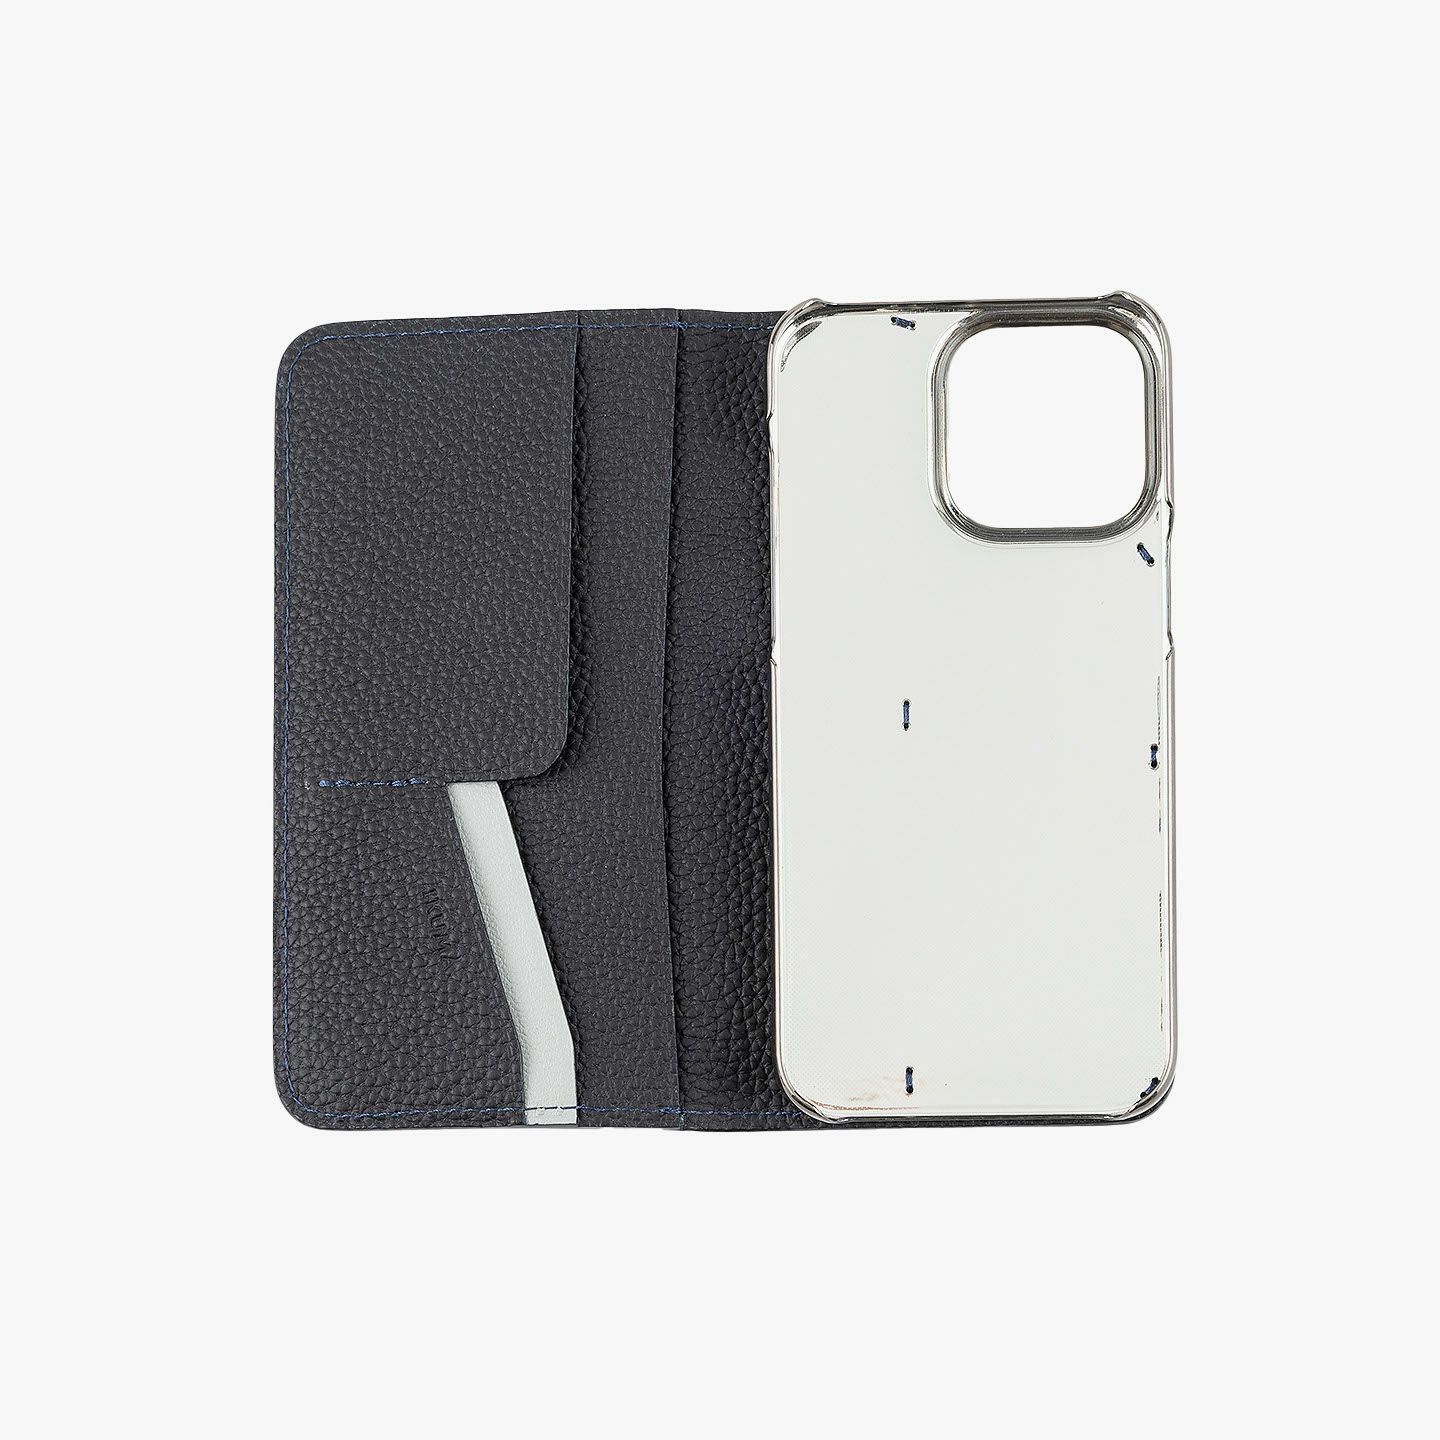 シュランケンカーフ 手帳型 iPhoneケース | 大人のバッグ・財布 